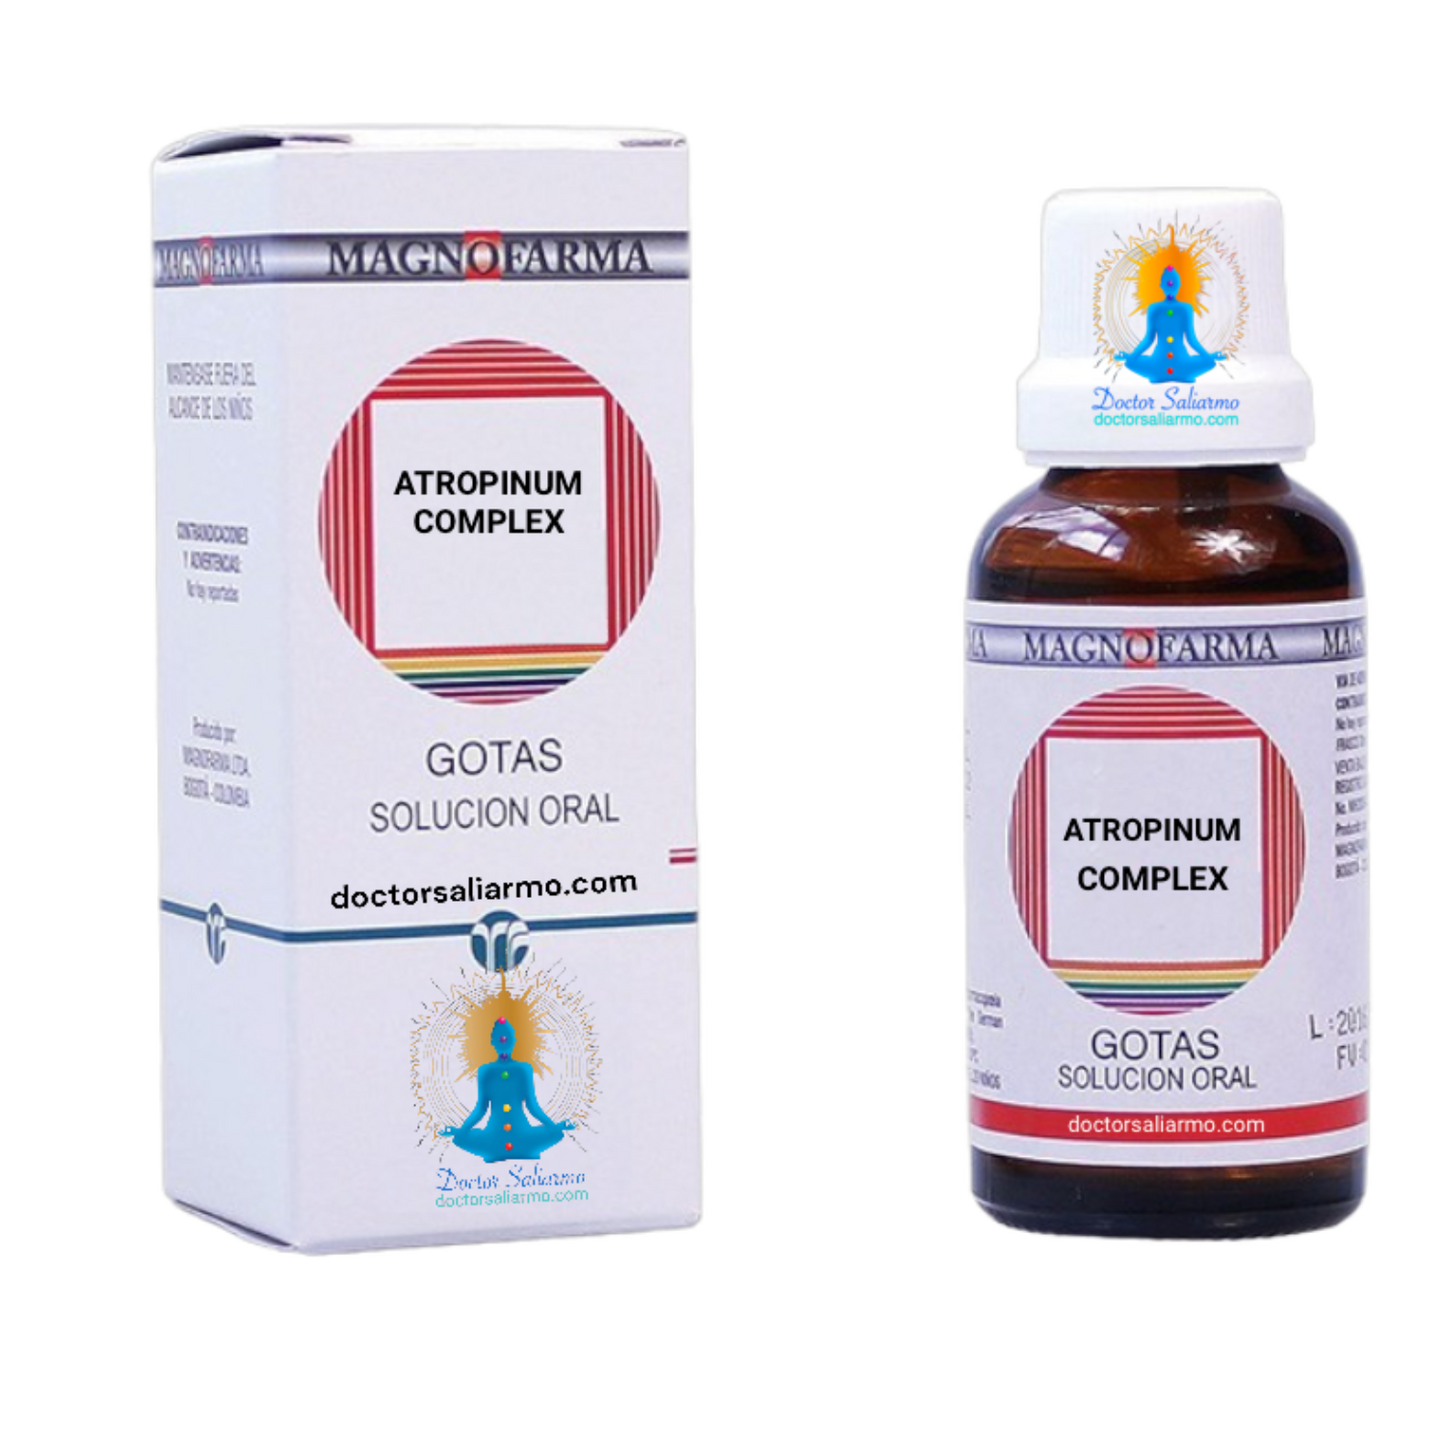 Atropinum medicamento homeopático indicado para ayudar en cólico biliar, cólico renal, cólico umbilical de los niños, tos espasmódica, tos ferina, dismenorrea.